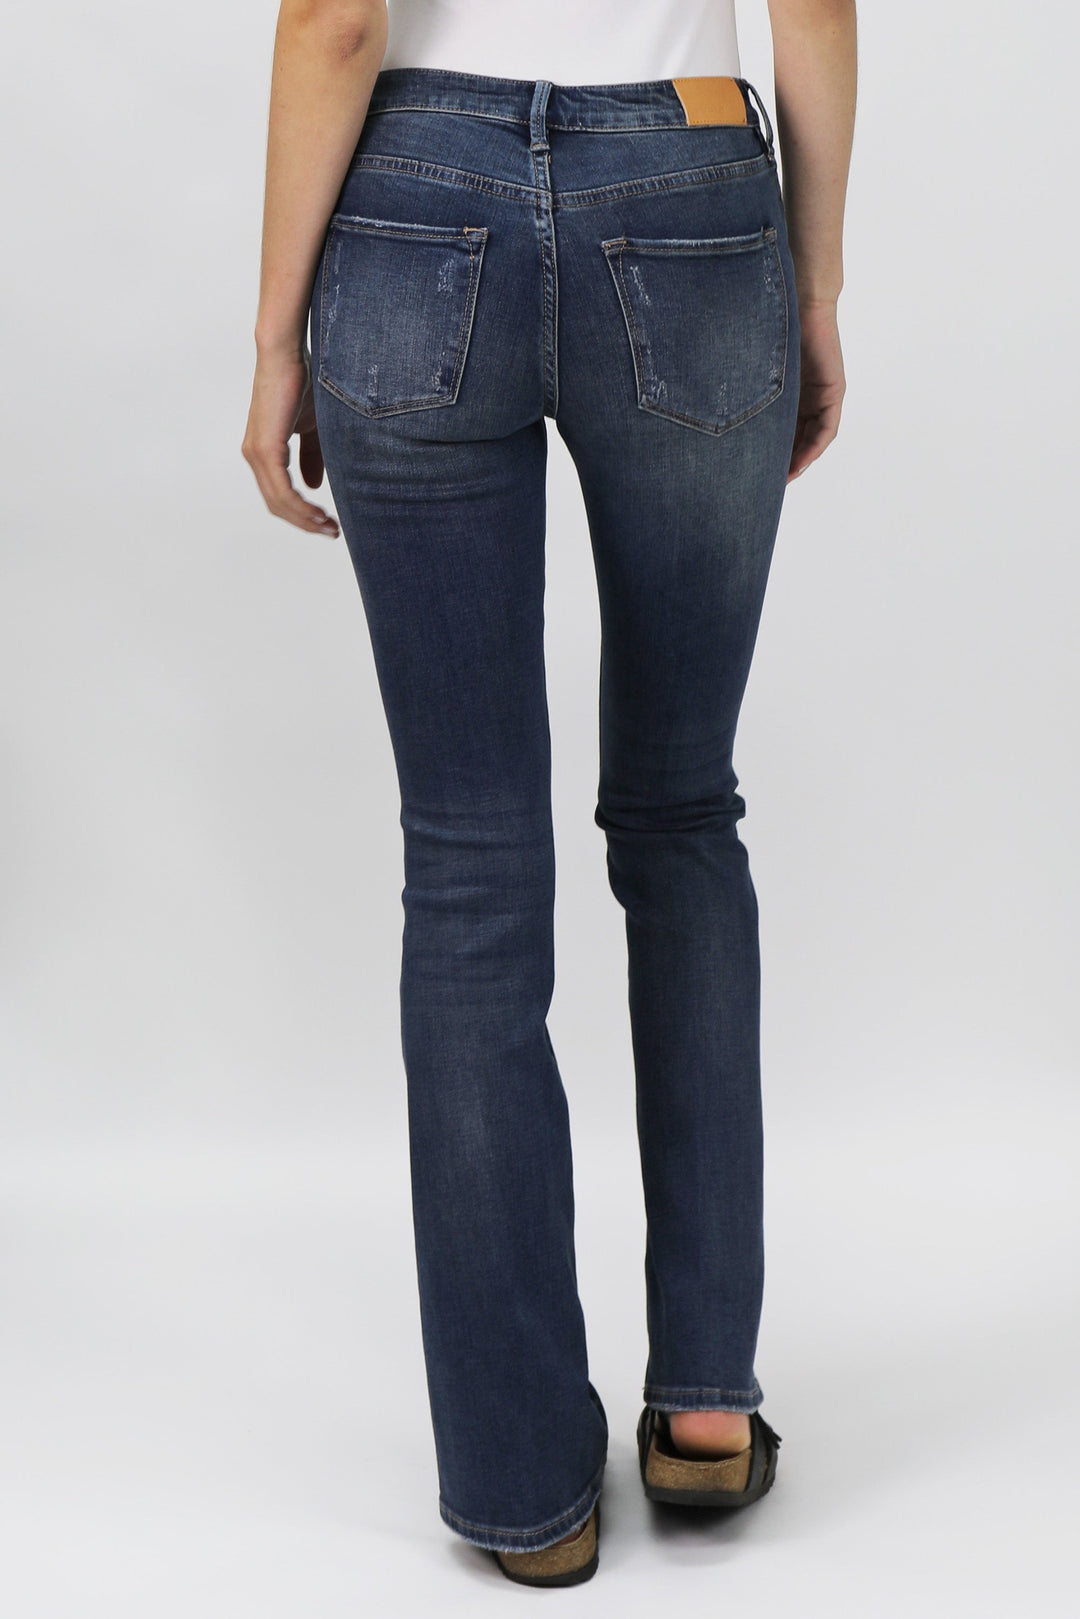 image of a female model wearing a jaxtyn high rise bootcut jeans millbridge JEANS